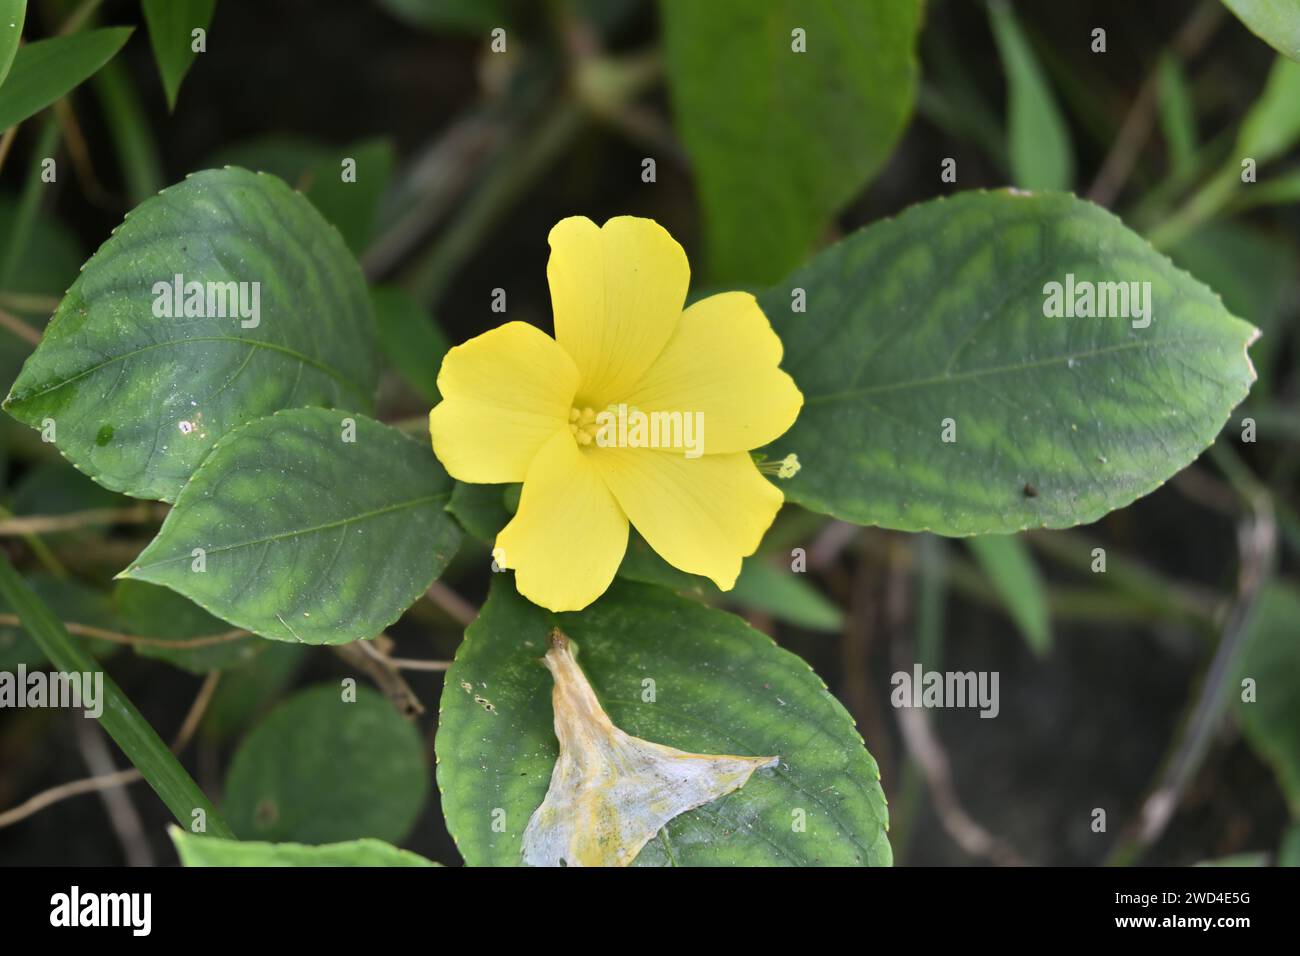 Vista de una flor delgada de cinco pétalos en forma de trompeta de color amarillo, pertenece al género Reinwardtia. Una flor marchita y estropeada ha caído sobre una l verde Foto de stock